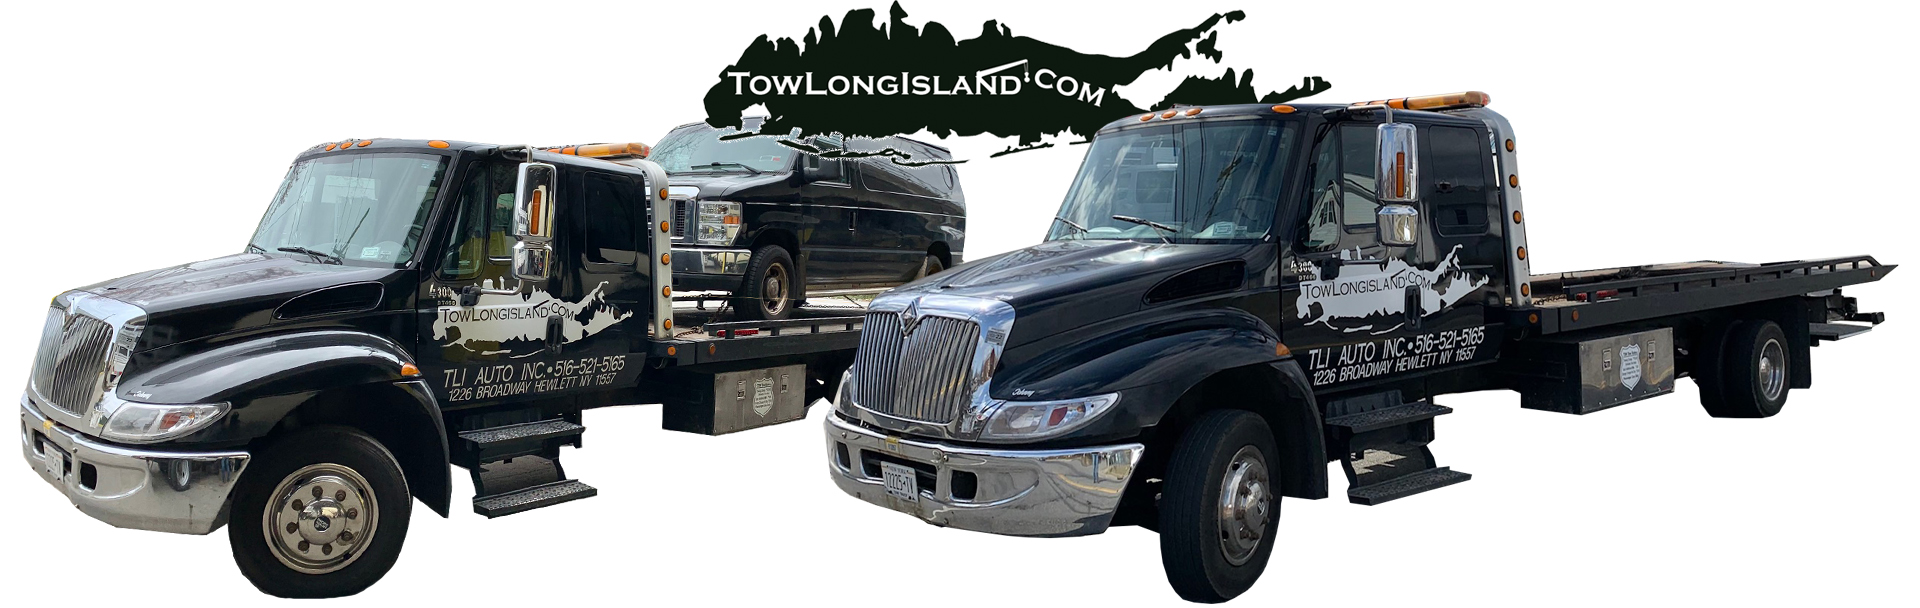 TowLongIsland.com | Tow Truck Professional Services | Far Rockaway, Queens, New York